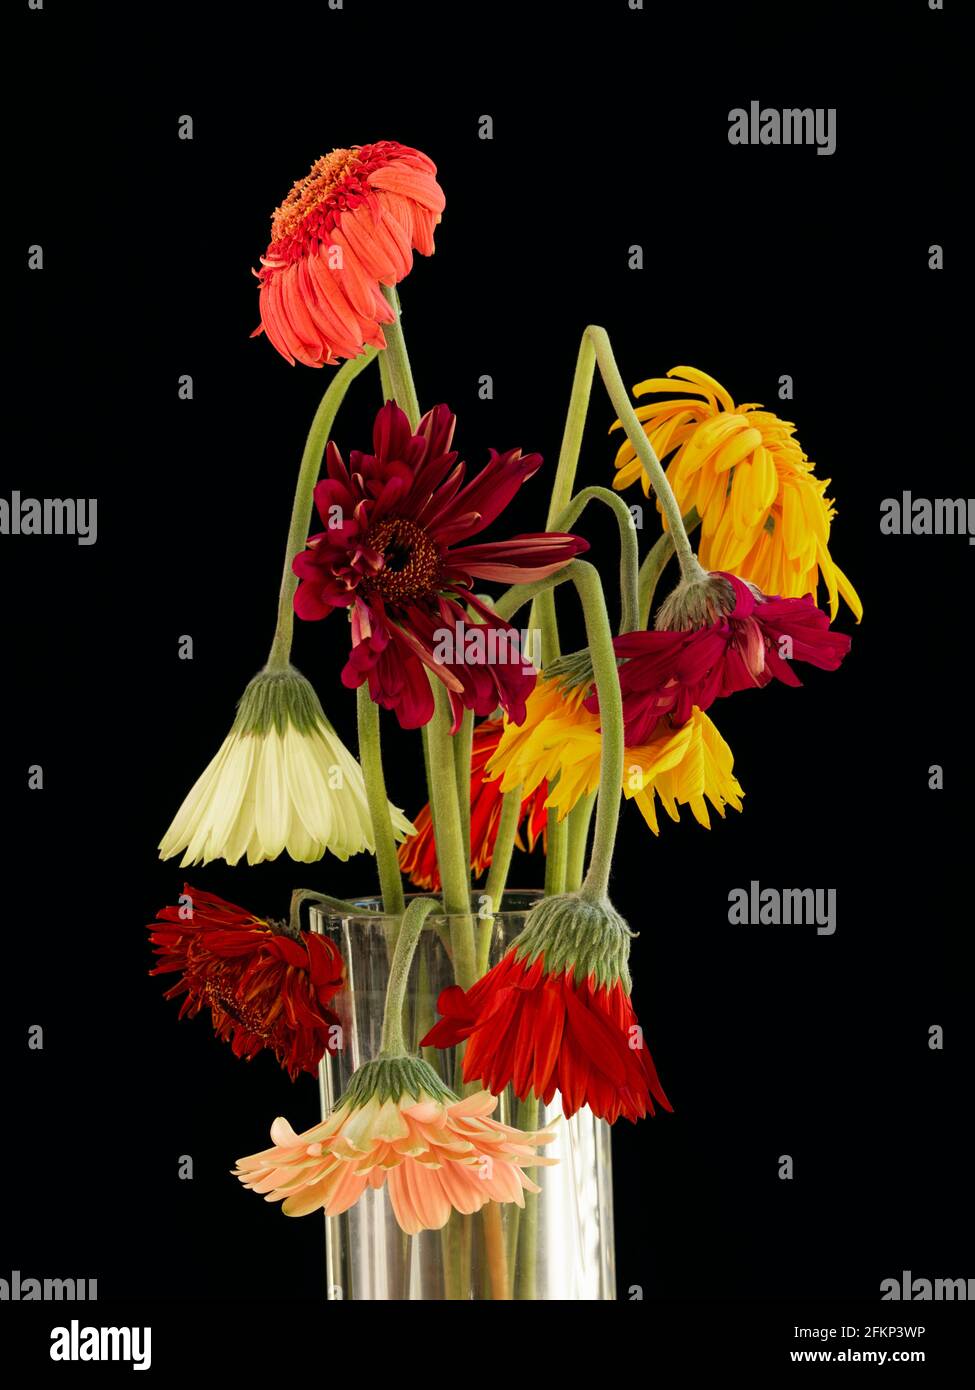 Un arrangement foral de Gerbera qui ont fané. Arrangement floral multicolore de Gerbera (Asteraceae) qui est originaire des régions tropicales Banque D'Images